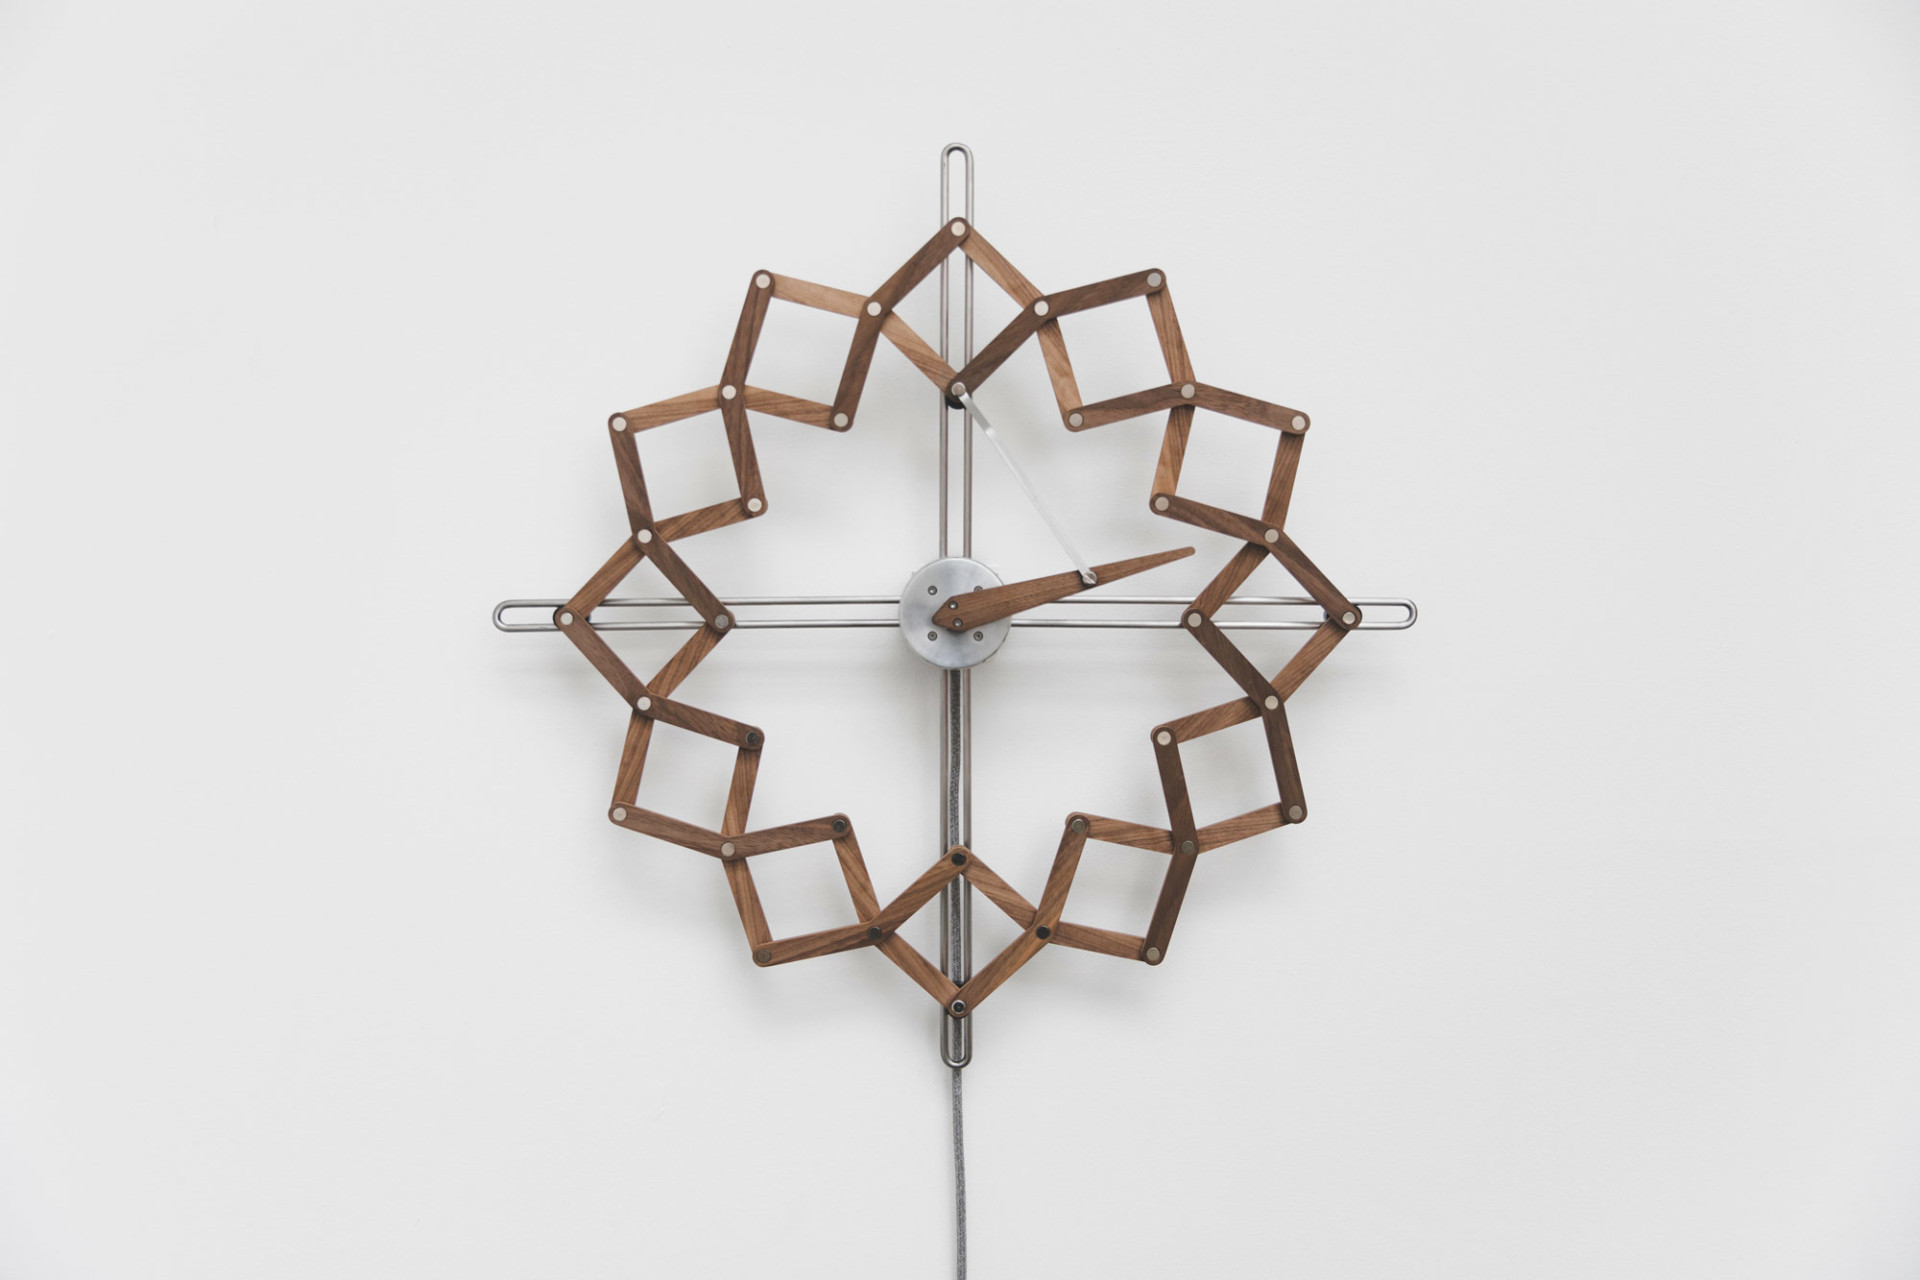 【变形时钟】工作室animaro设计的一个变形木制时钟,它可以随时间的